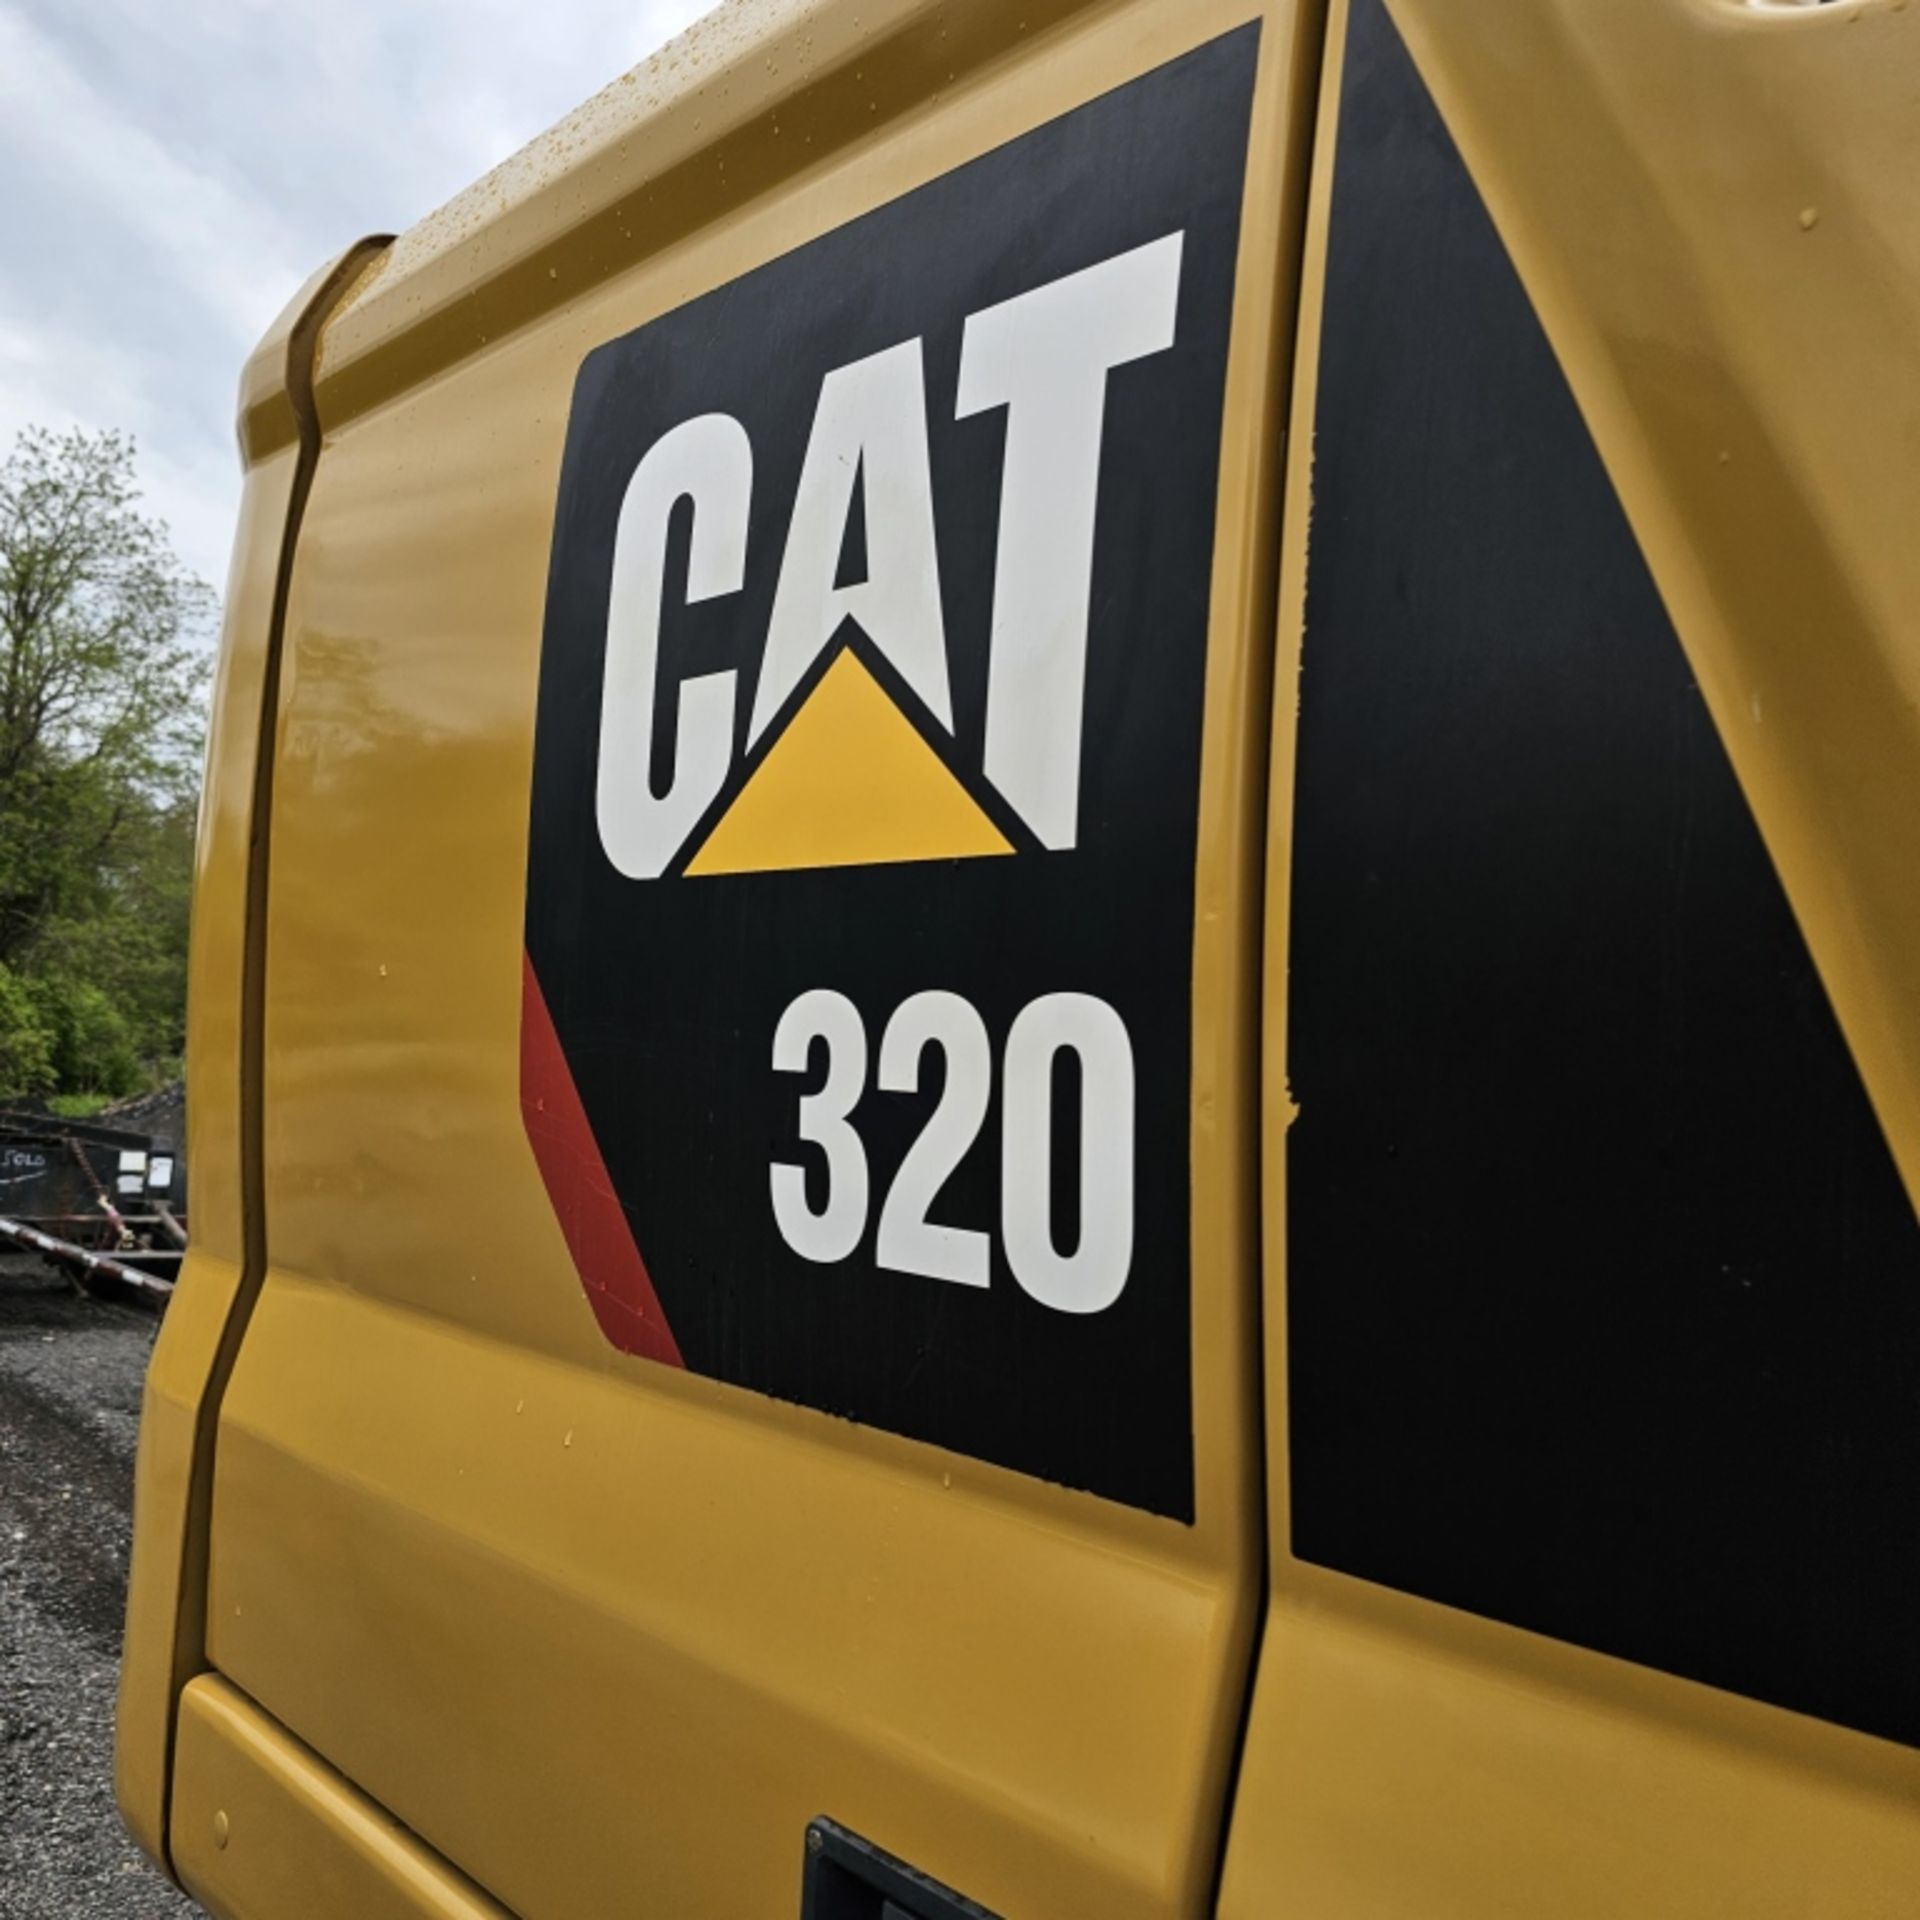 2018 Cat 320 Excavator - Image 7 of 10